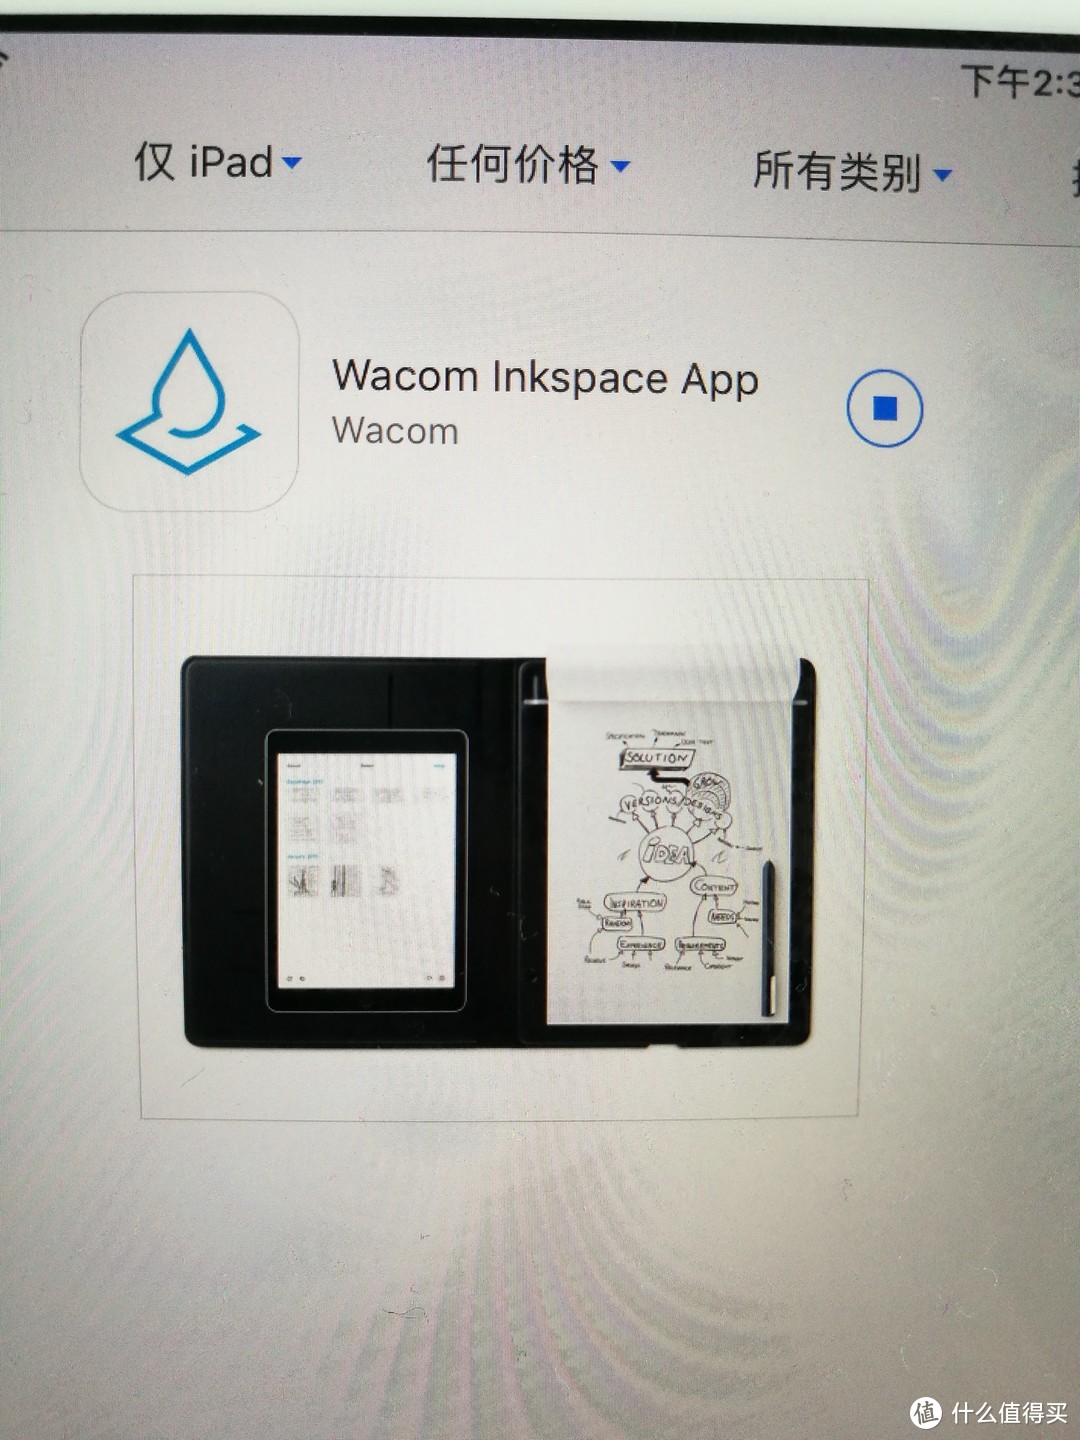 对应的App：Inkspace